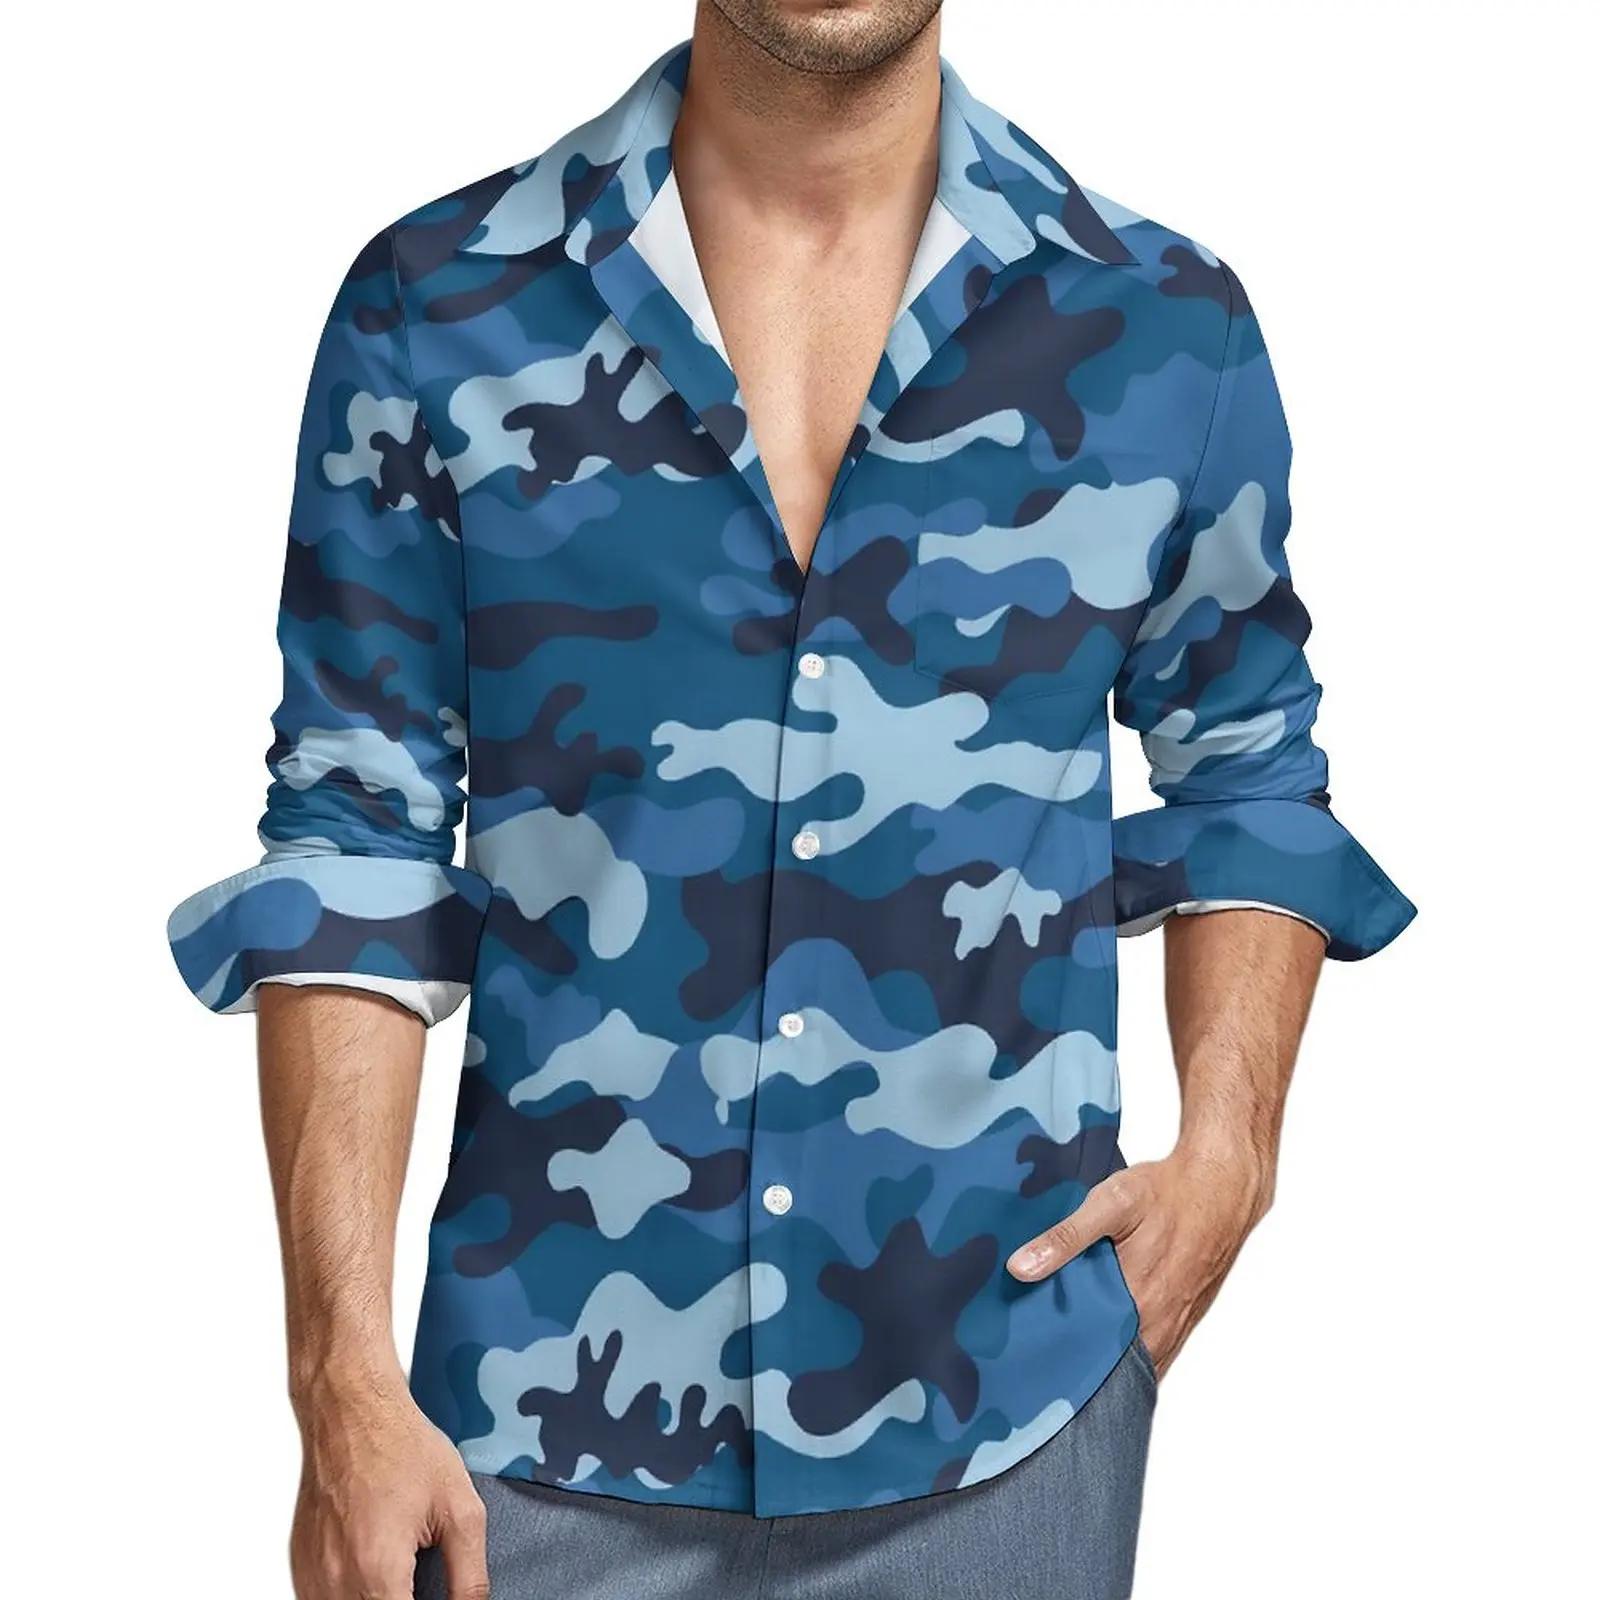 

Рубашка мужская камуфляжная с длинным рукавом, Повседневная Блузка в стиле милитари, уличный стиль, синяя, большие размеры, на весну